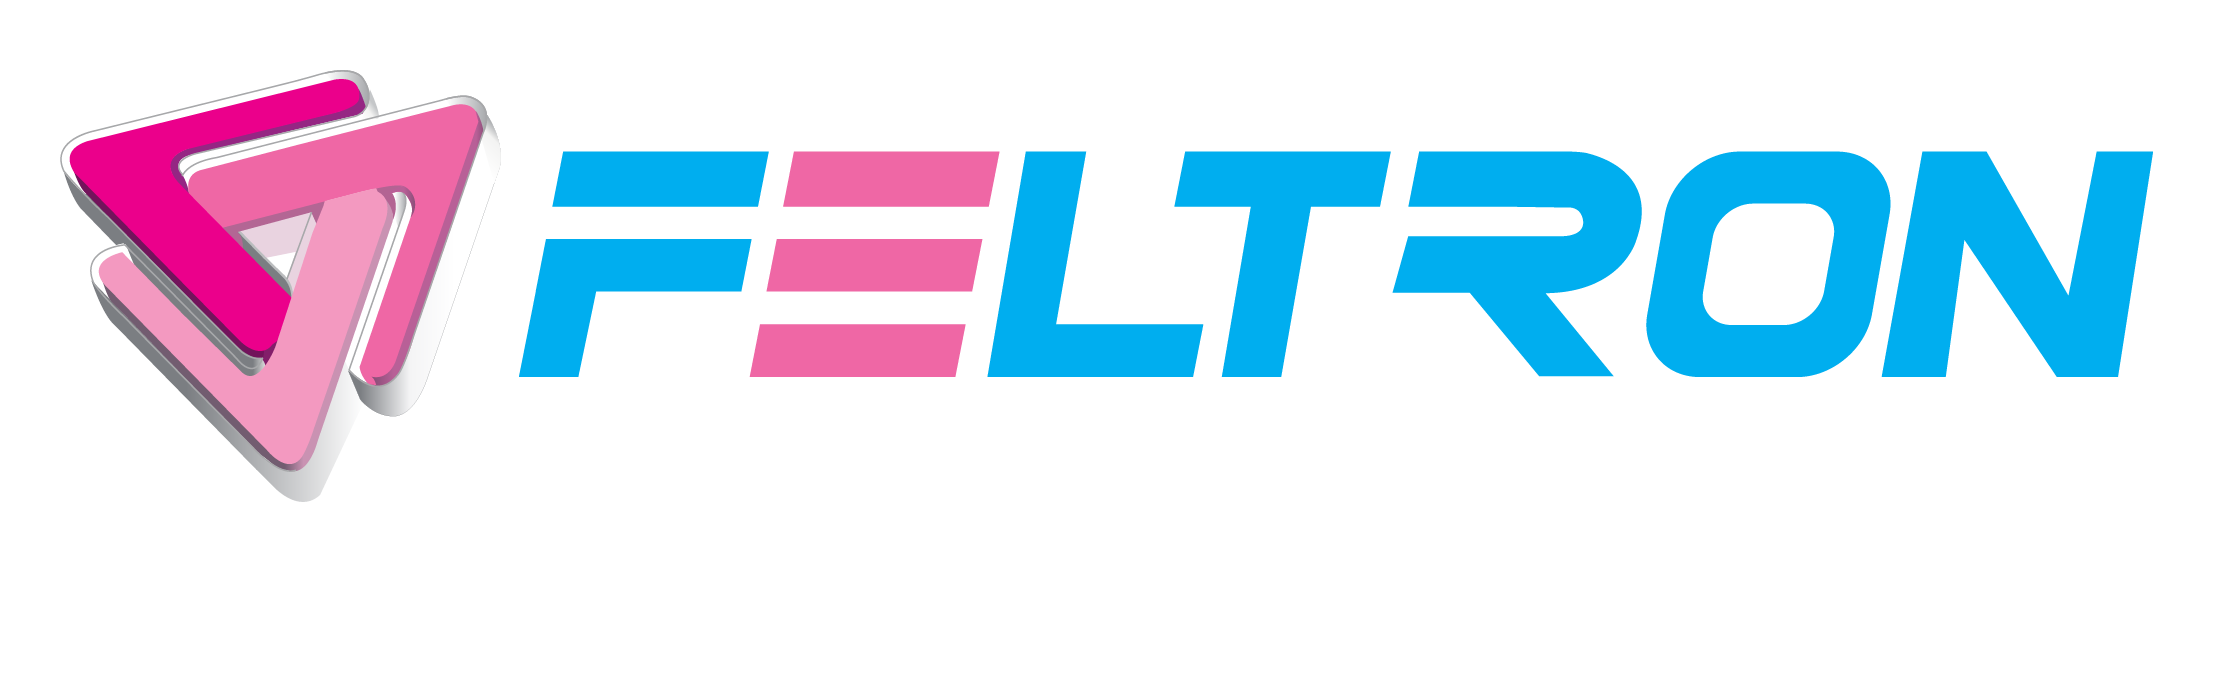 FELTRON SECURITY SYSTEMS LLC